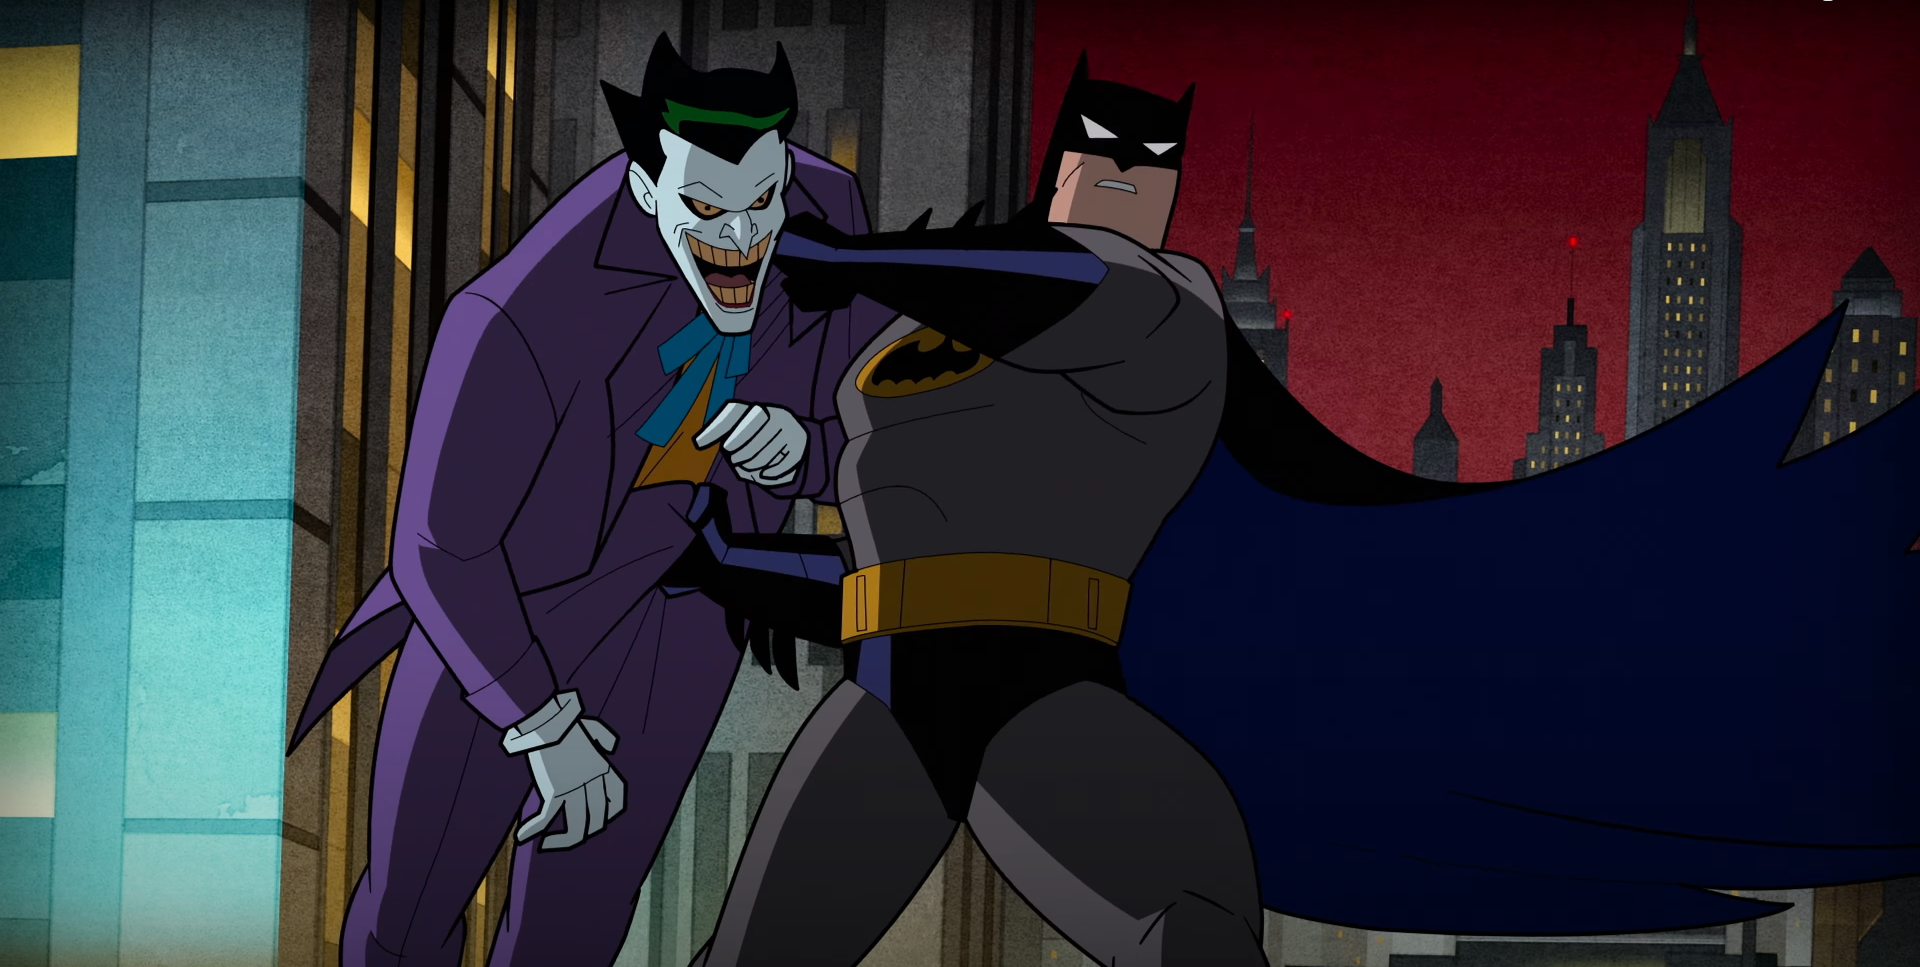 Justice League: Crisi sulle Terre Infinite, il trailer della terza parte rivela il ritorno di Batman e Joker nella serie animata